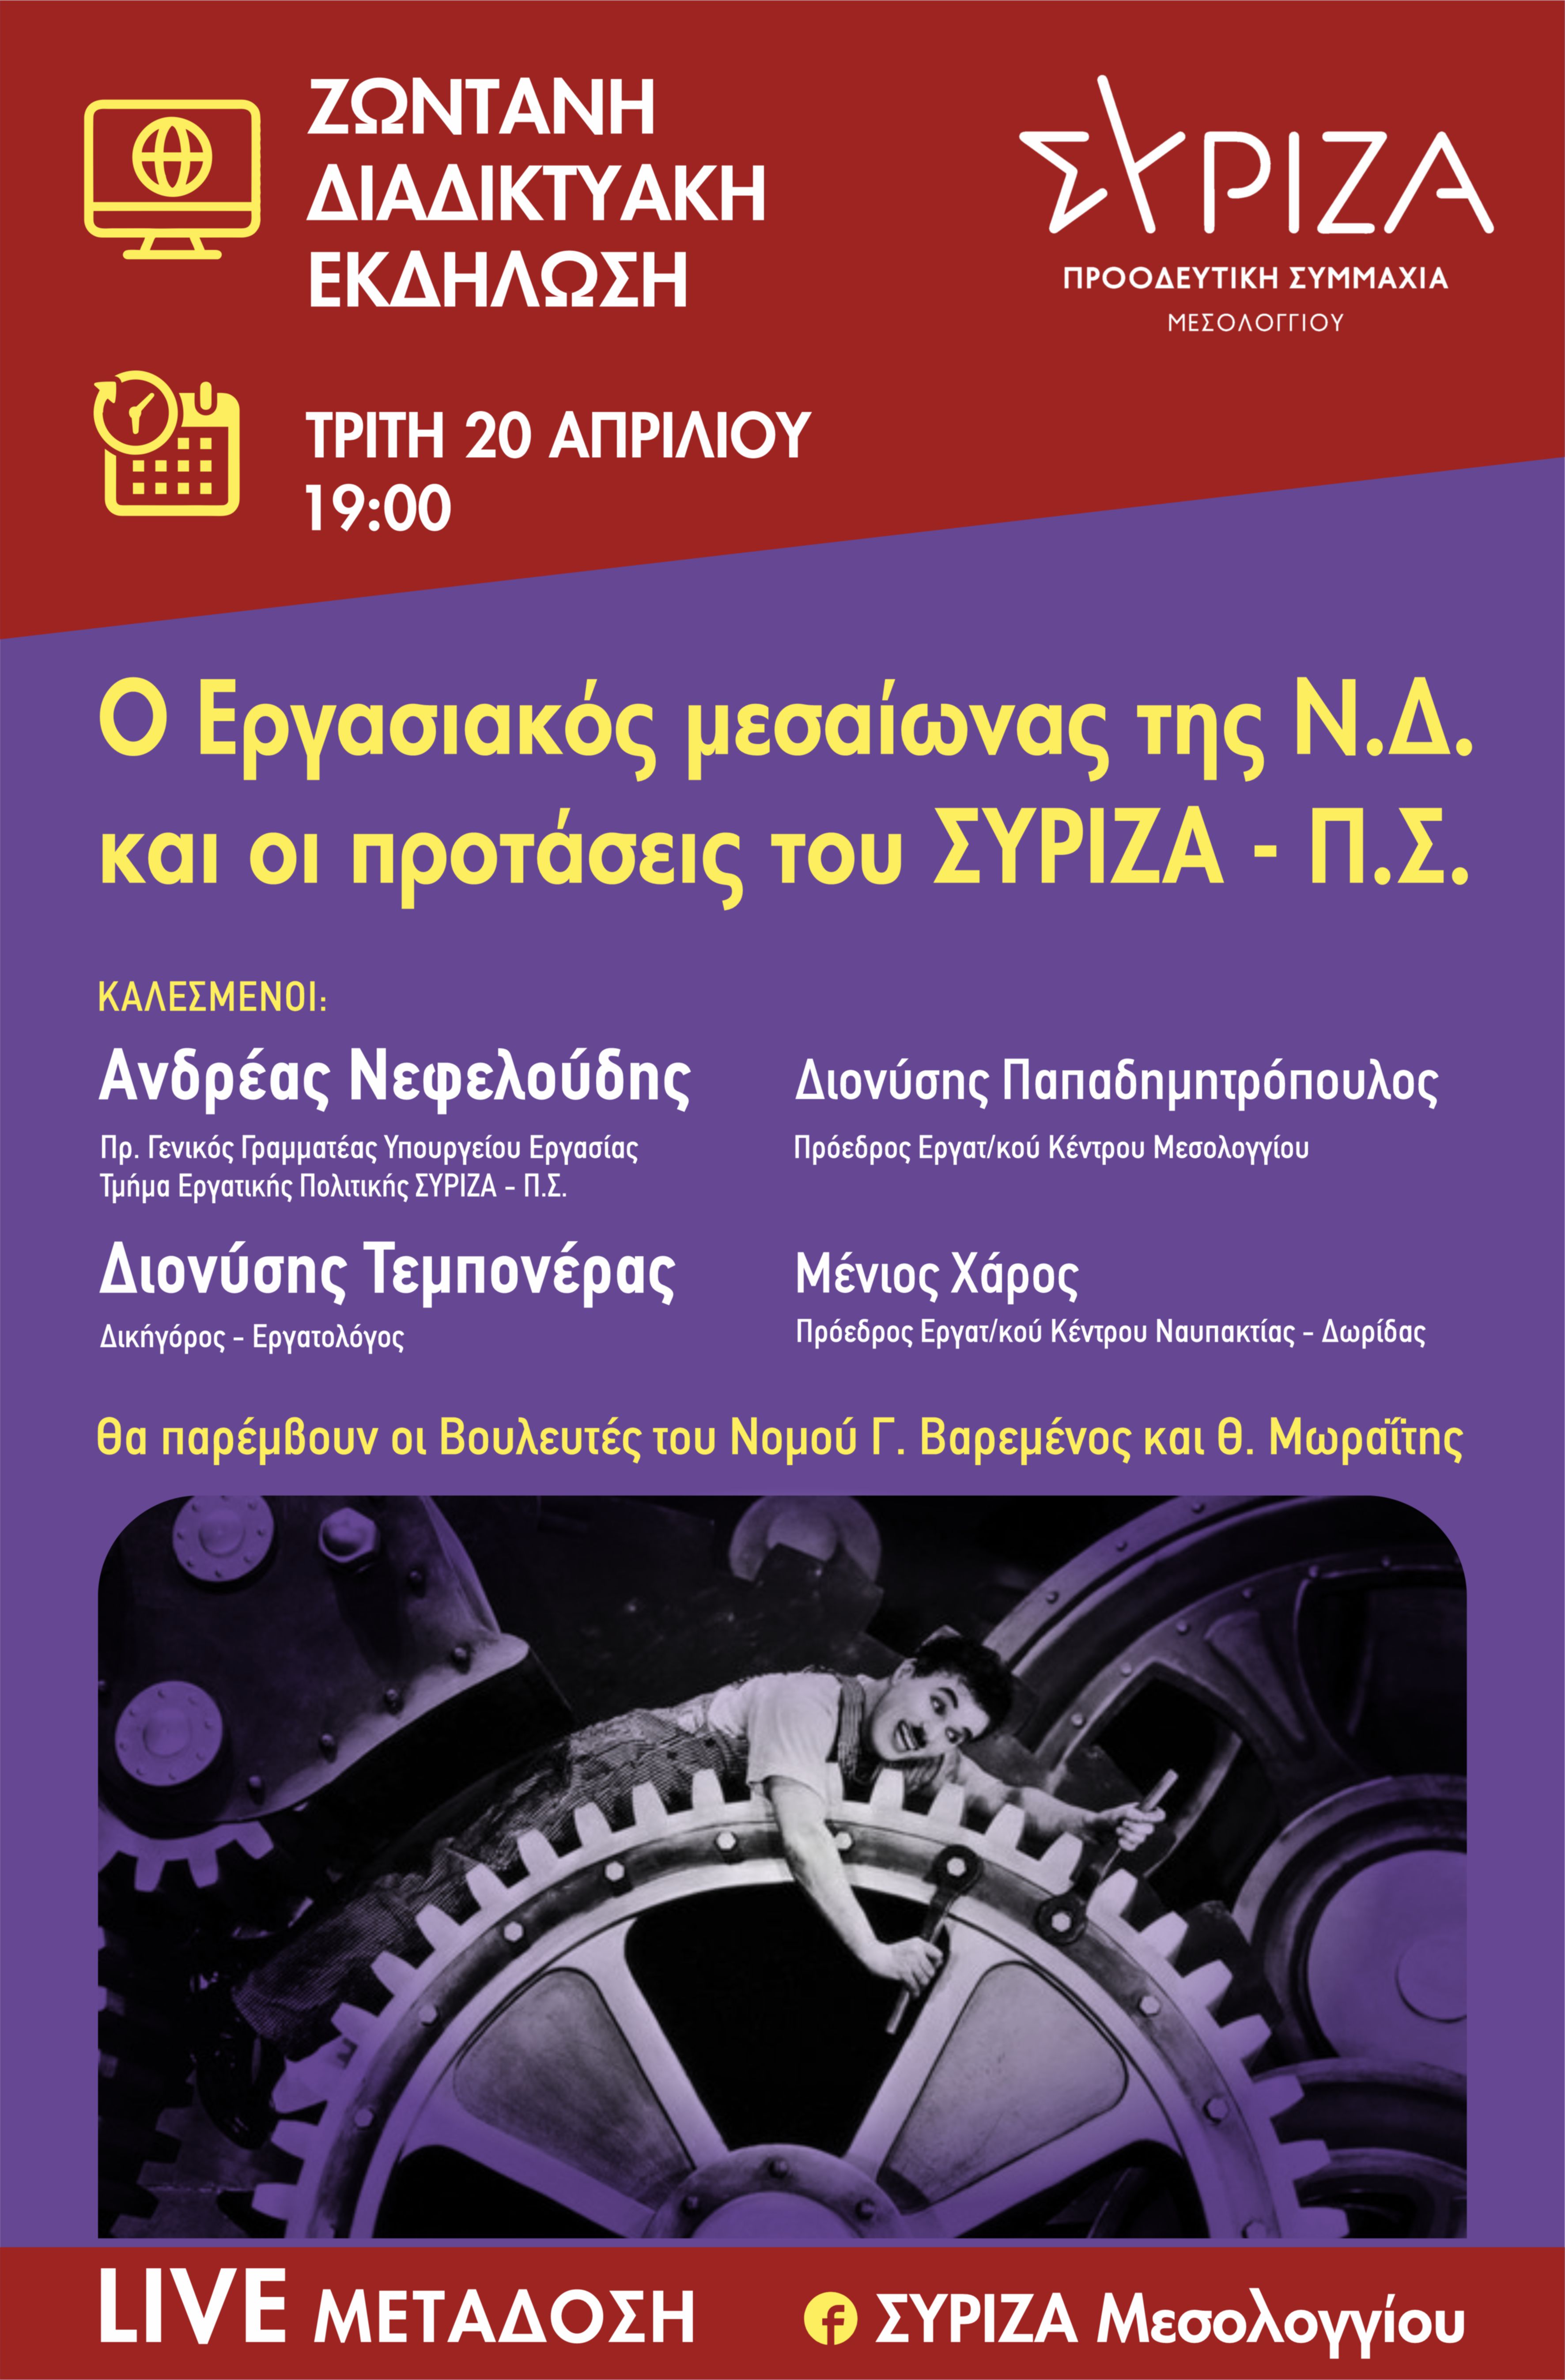  Διαδικτυακή Εκδήλωση για τα Εργασιακά από ΣΥΡΙΖΑ – Προοδευτική Συμμαχία Μεσολογγίου  -  Τρίτη 20 Απριλίου